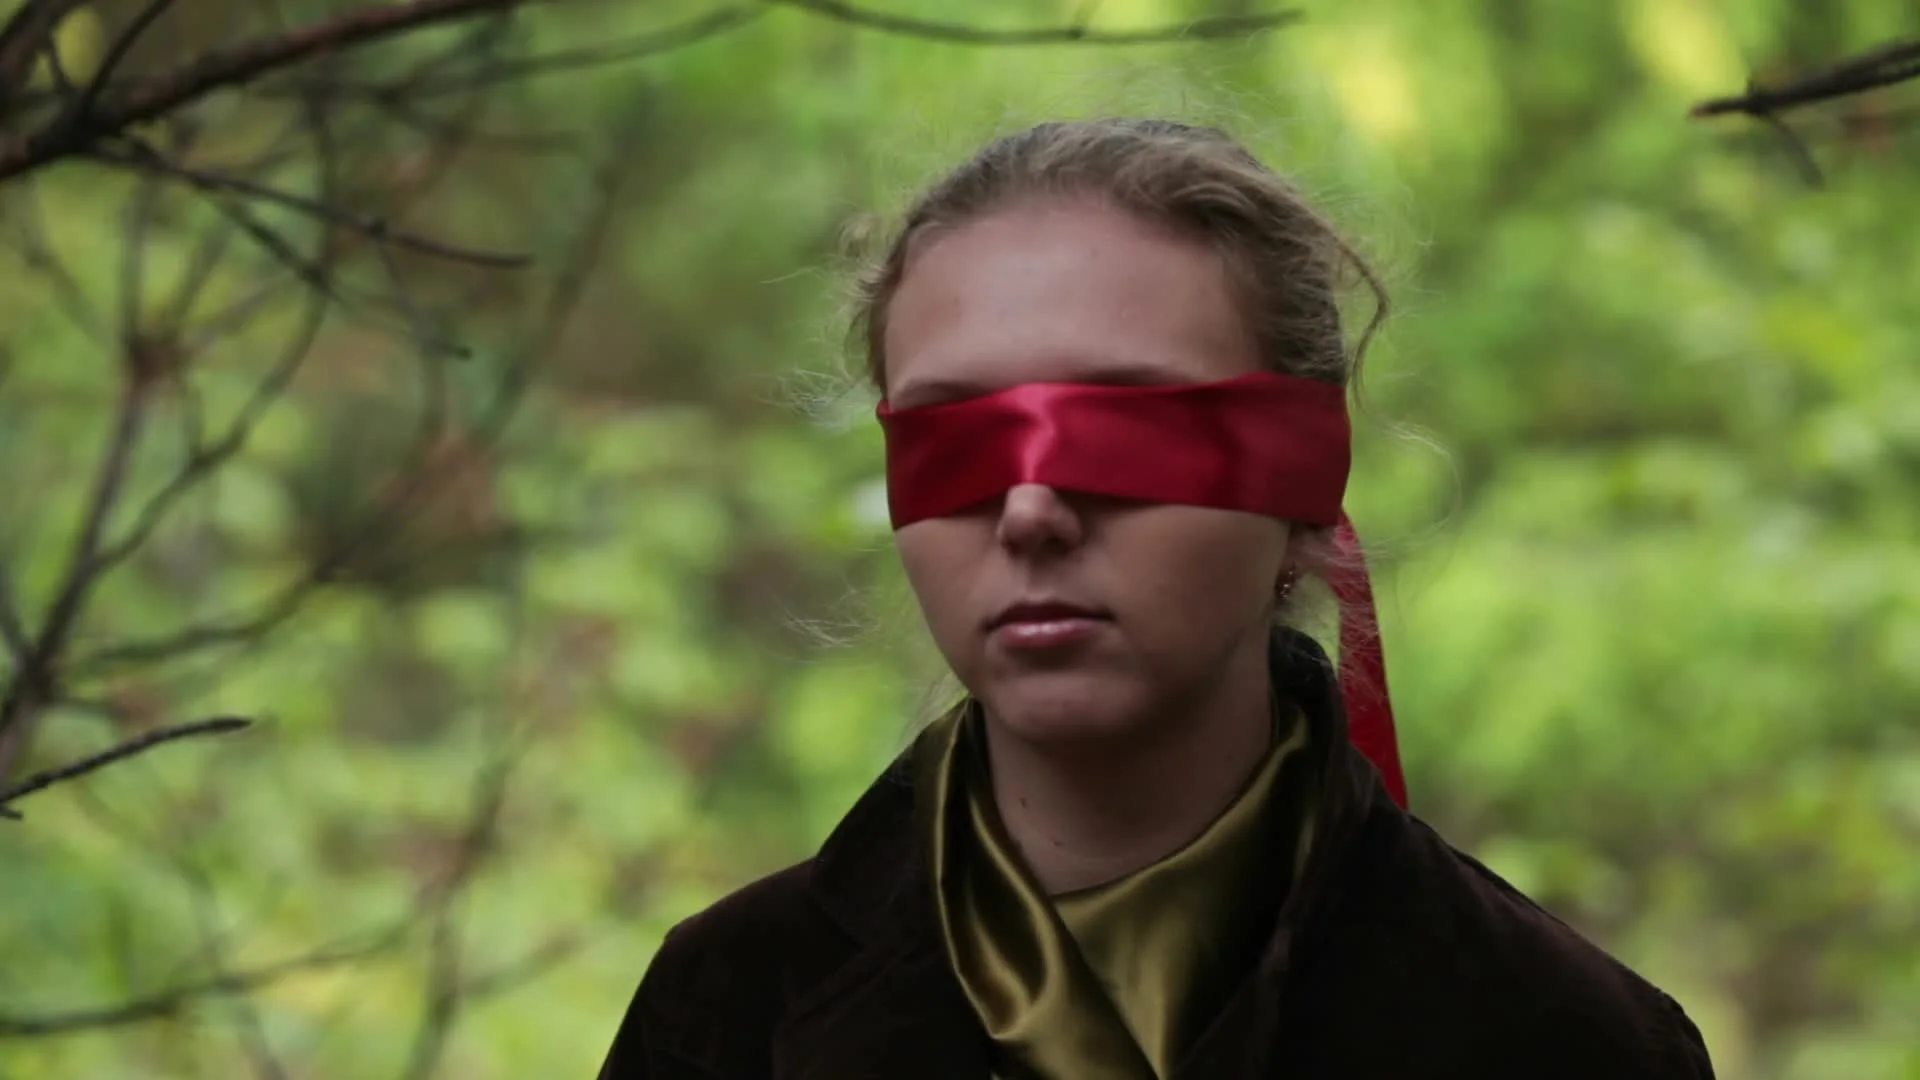 Blindfolded girl